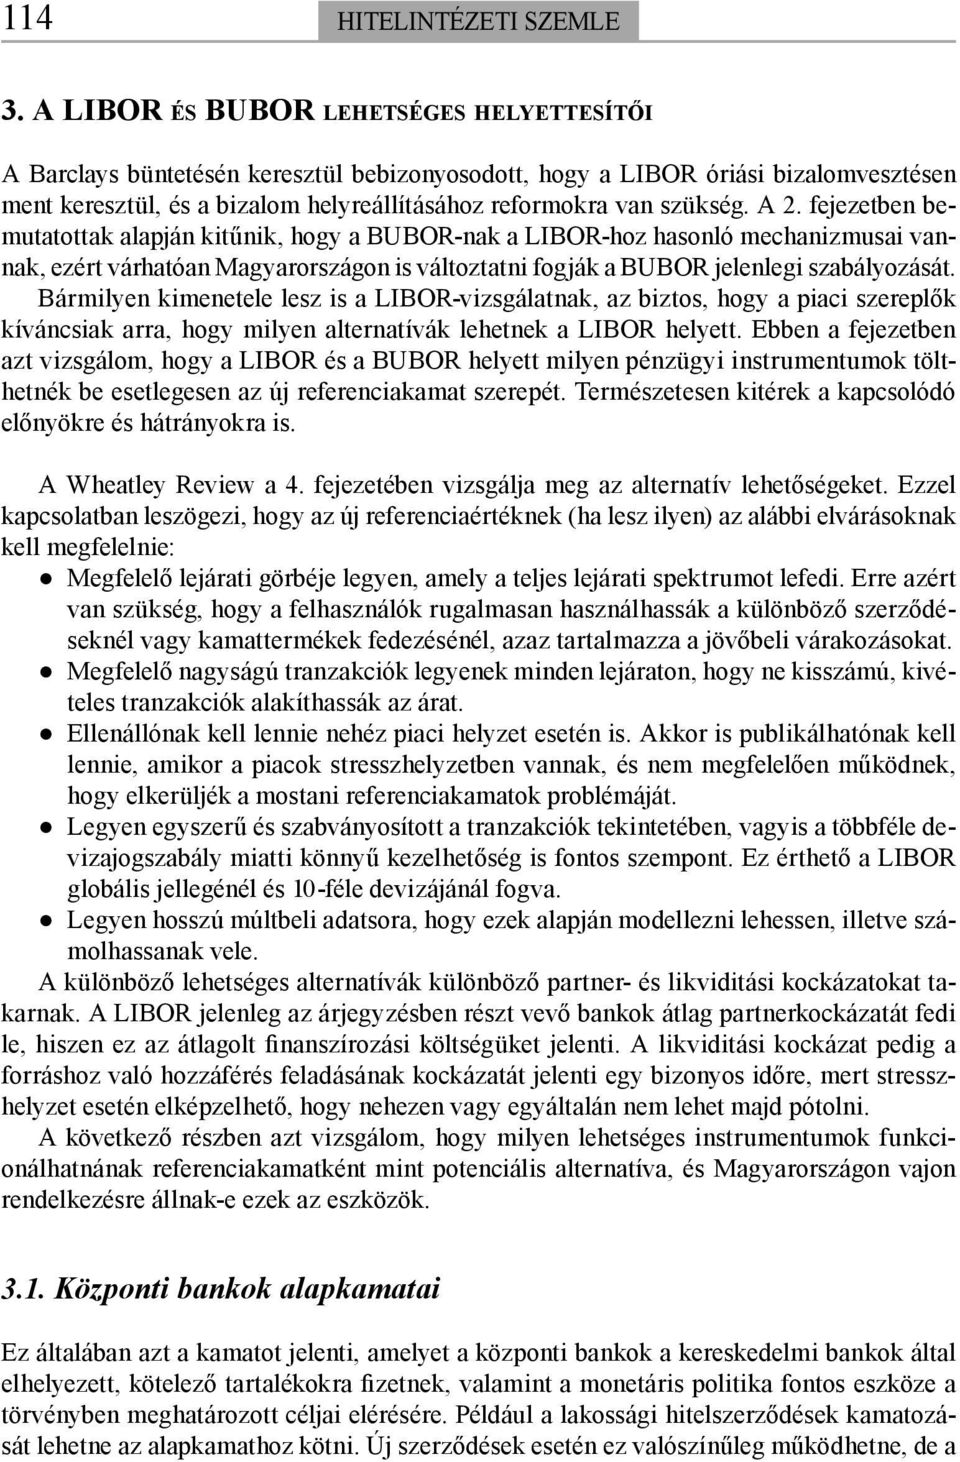 A 2. fejezetben bemutatottak alapján kitűnik, hogy a BUBOR-nak a LIBOR-hoz hasonló mechanizmusai vannak, ezért várhatóan Magyarországon is változtatni fogják a BUBOR jelenlegi szabályozását.